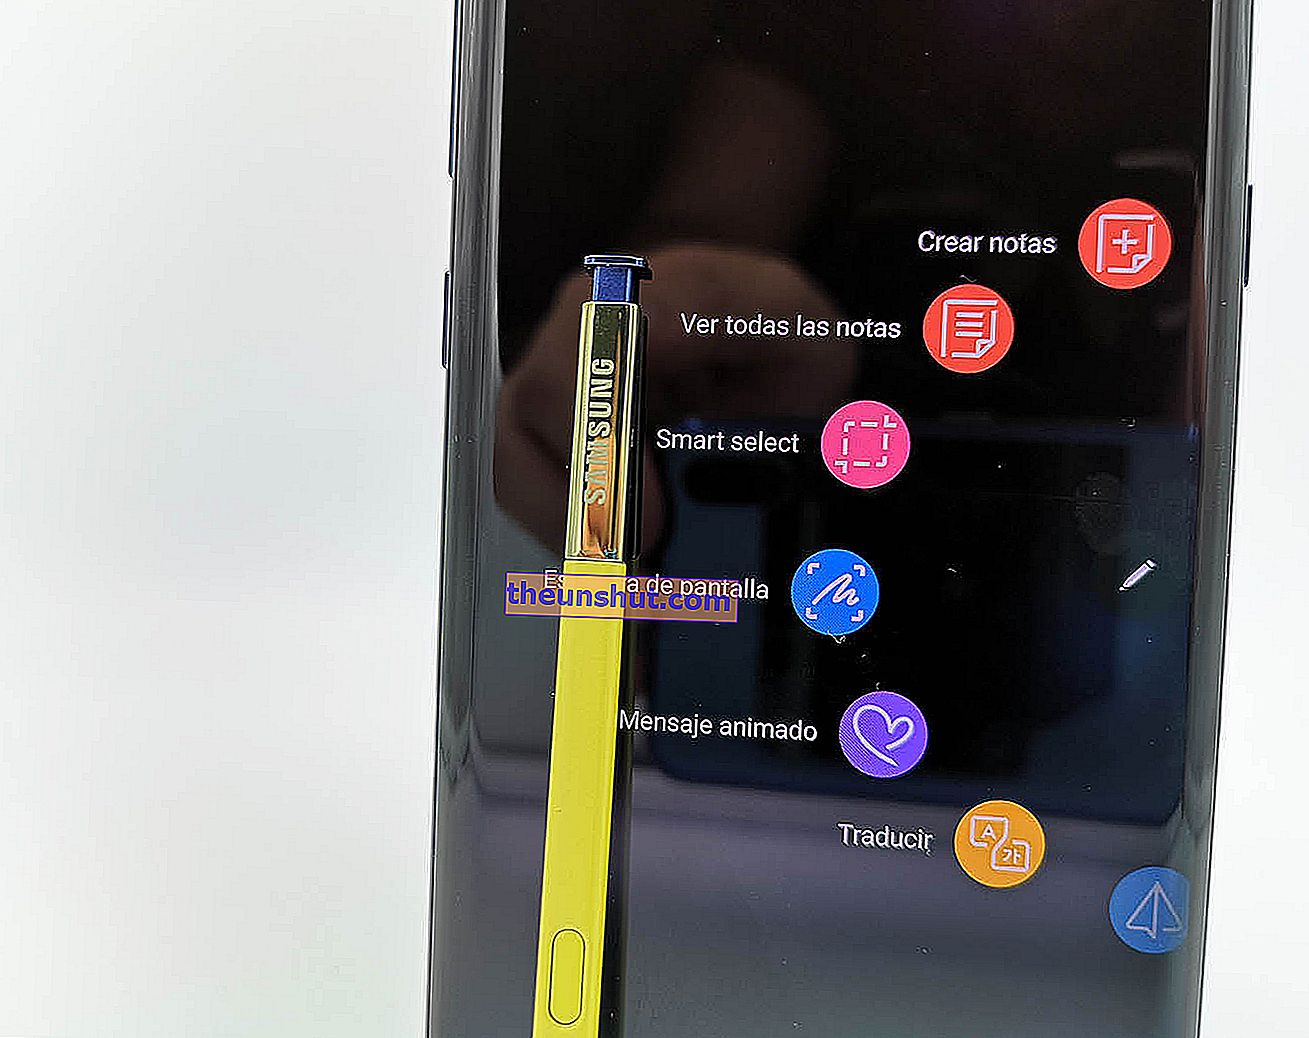 Samsung Galaxy Note 9 s pen-menu